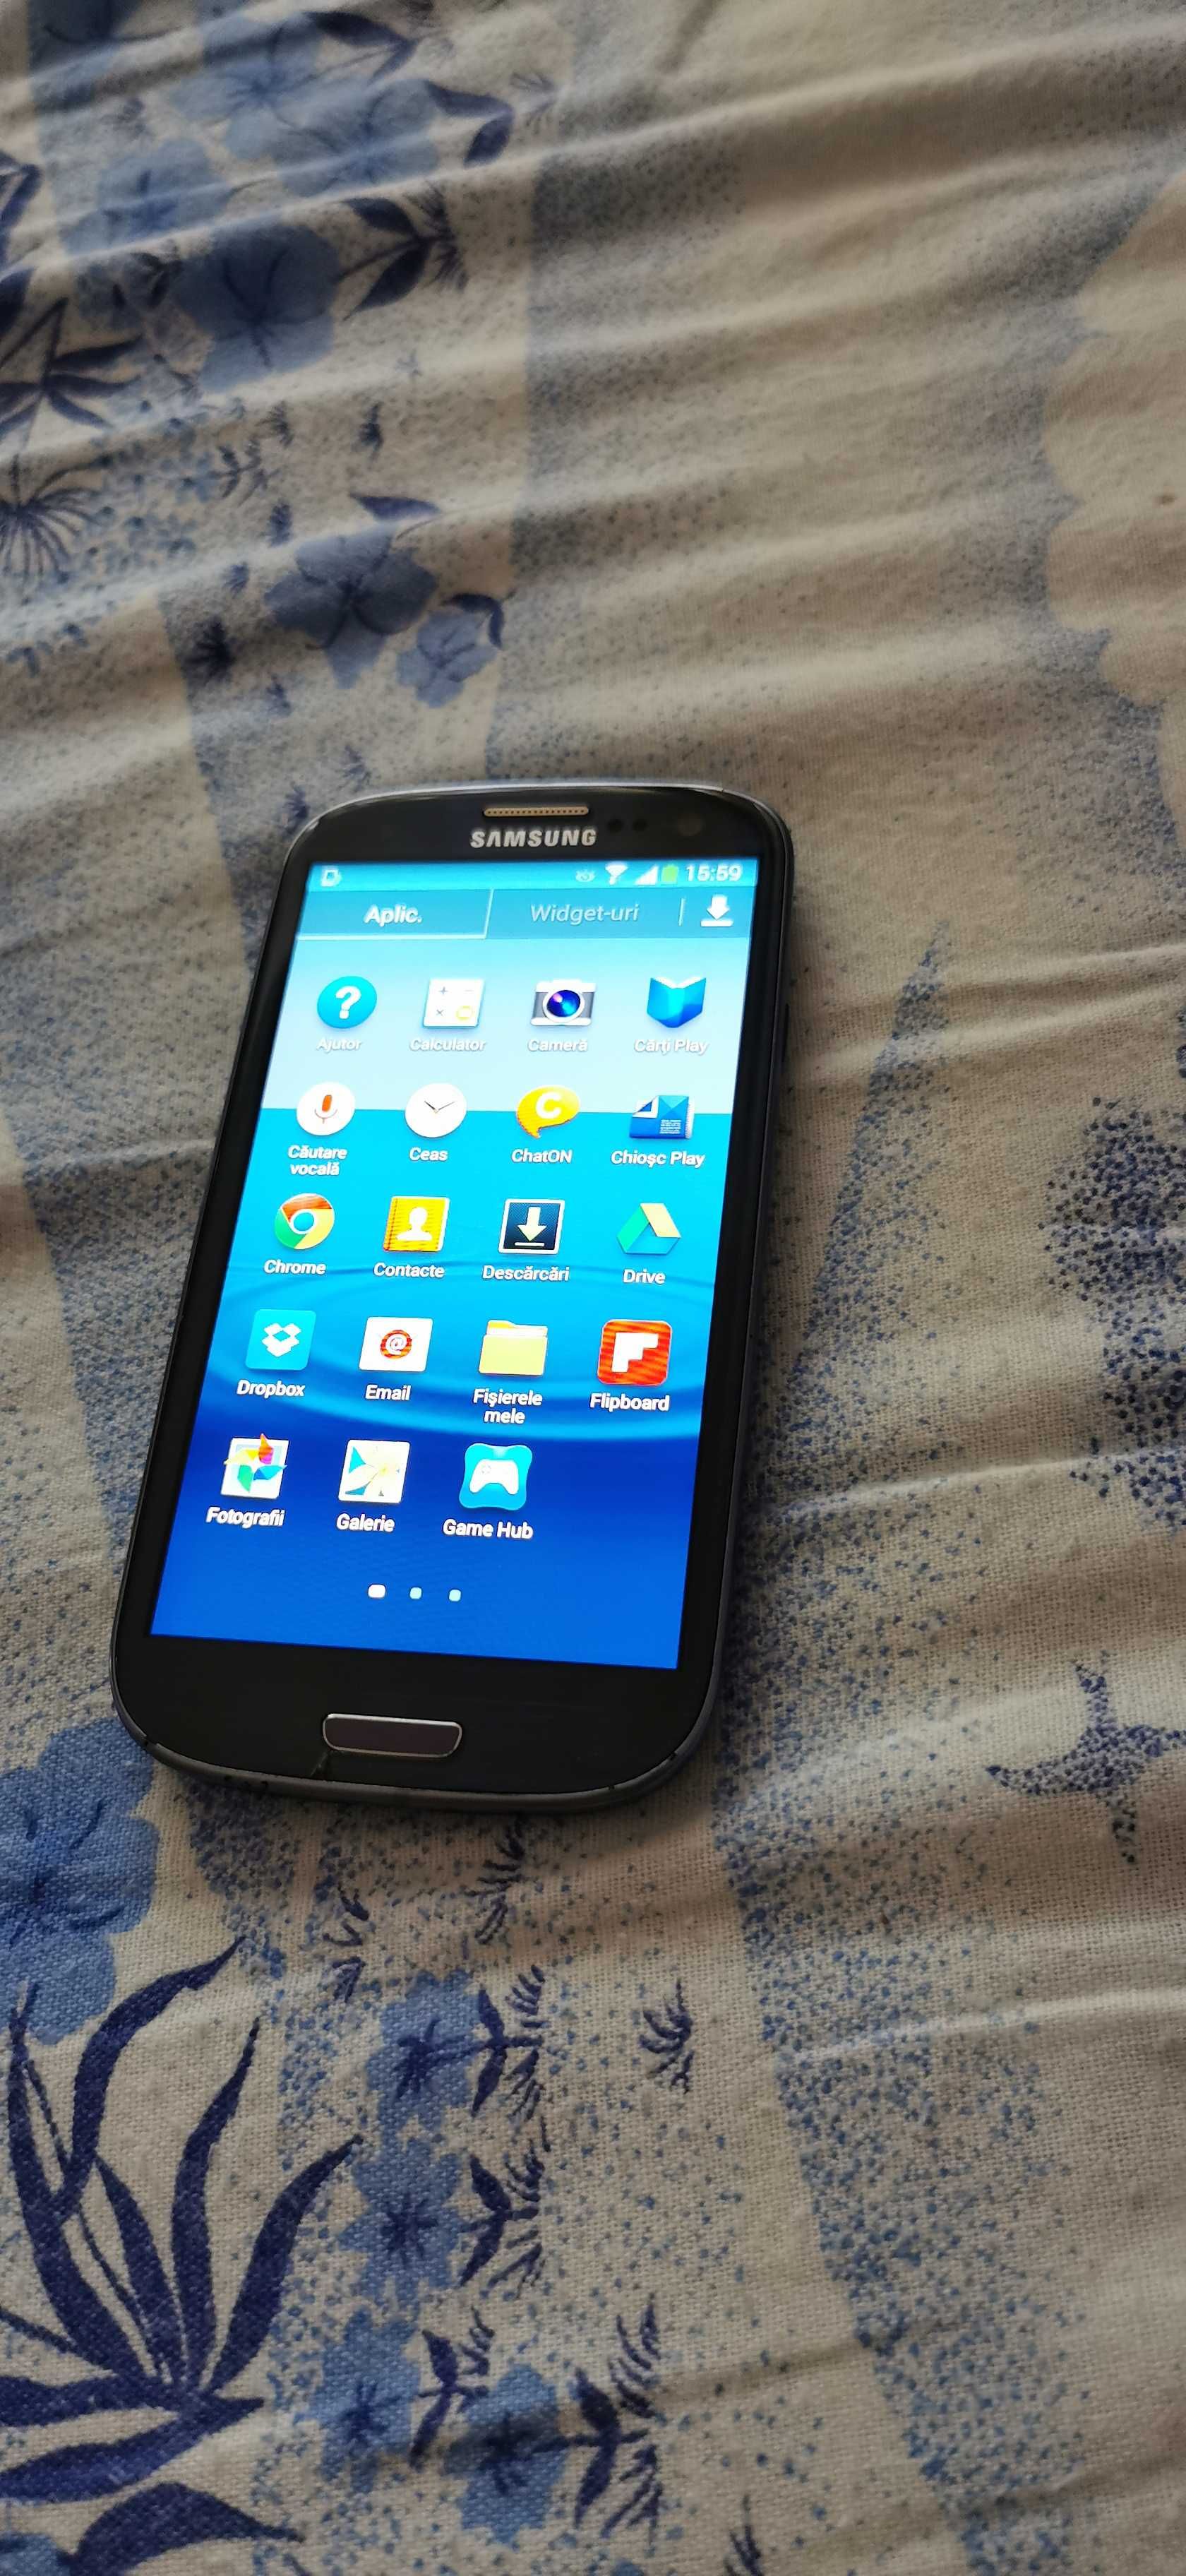 Telefon Mobil Samsung Galaxy SIII s3  I9300 16GB red La Fleur